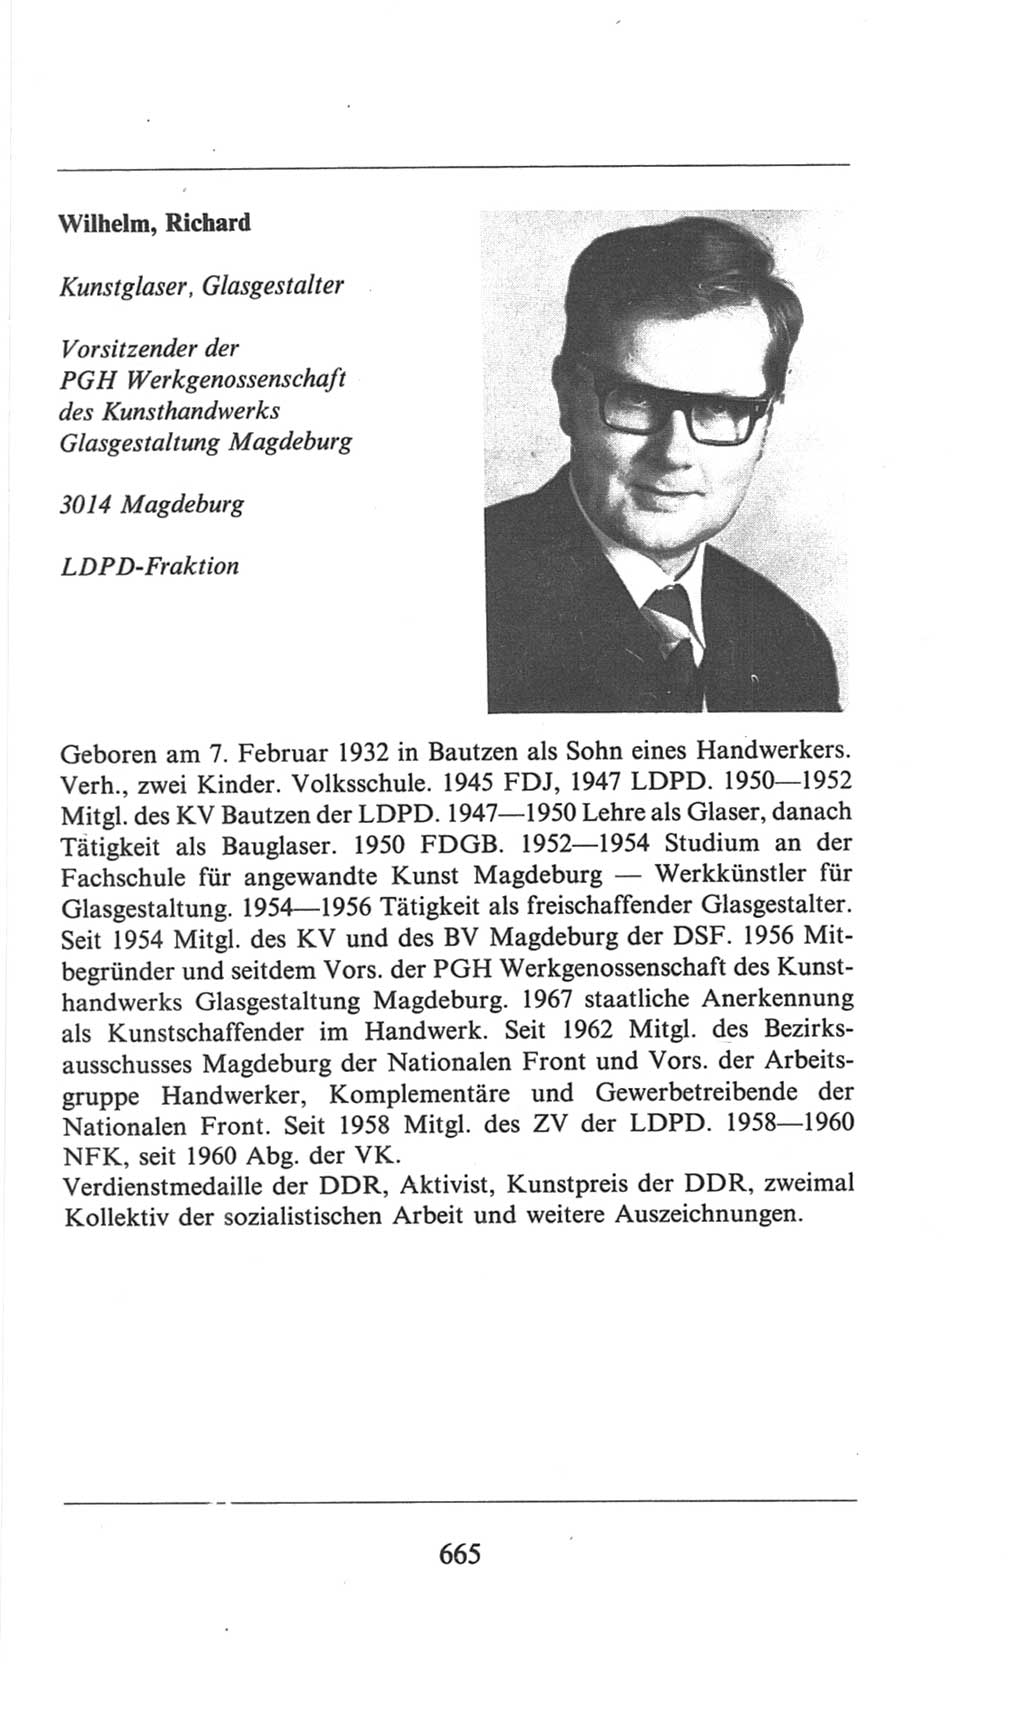 Volkskammer (VK) der Deutschen Demokratischen Republik (DDR), 6. Wahlperiode 1971-1976, Seite 665 (VK. DDR 6. WP. 1971-1976, S. 665)